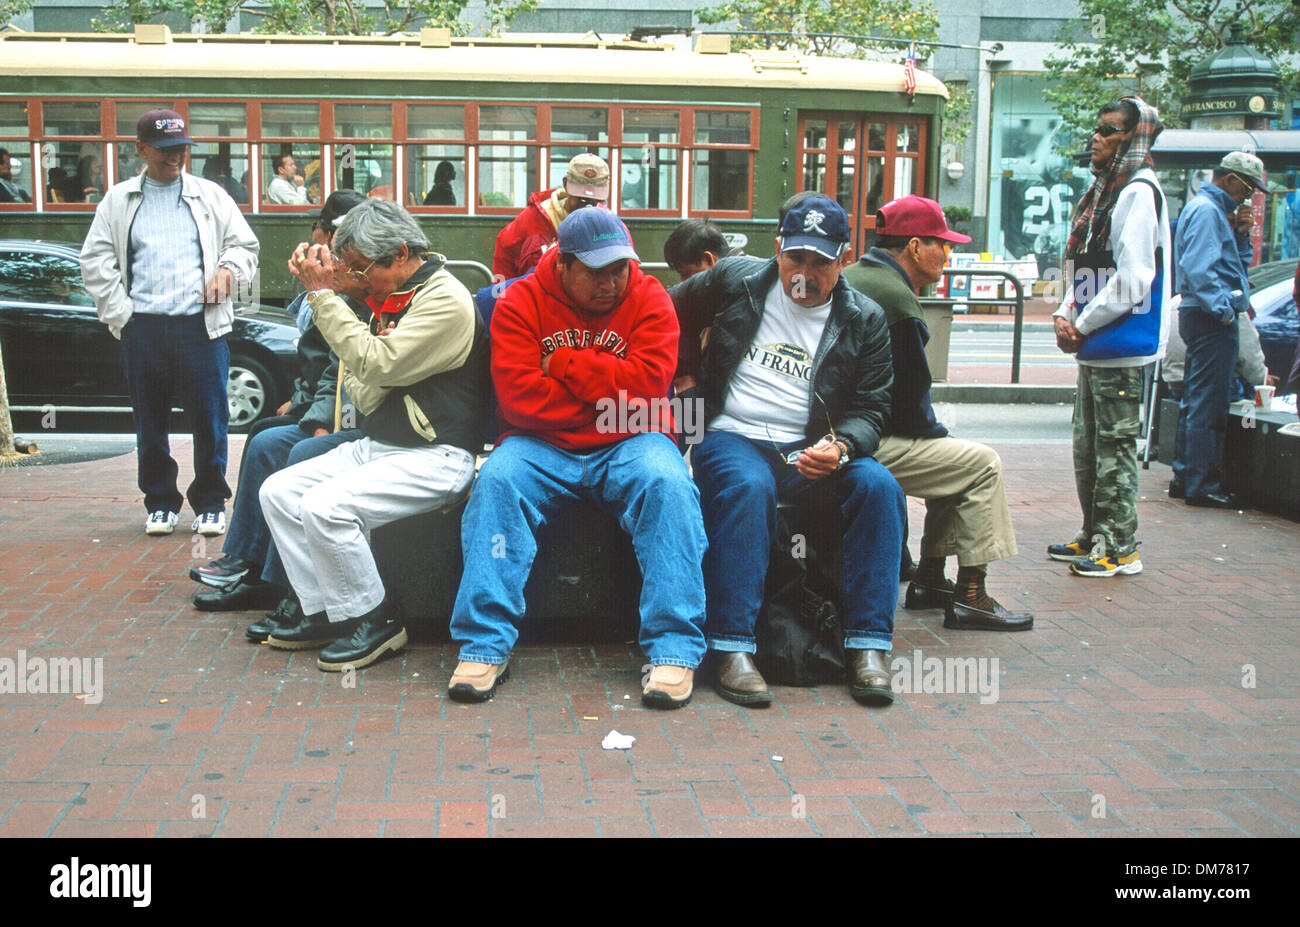 Nosotros San Francisco ,grupo de hombres sentados por trro hangi;;y detener el coche, Foto de stock